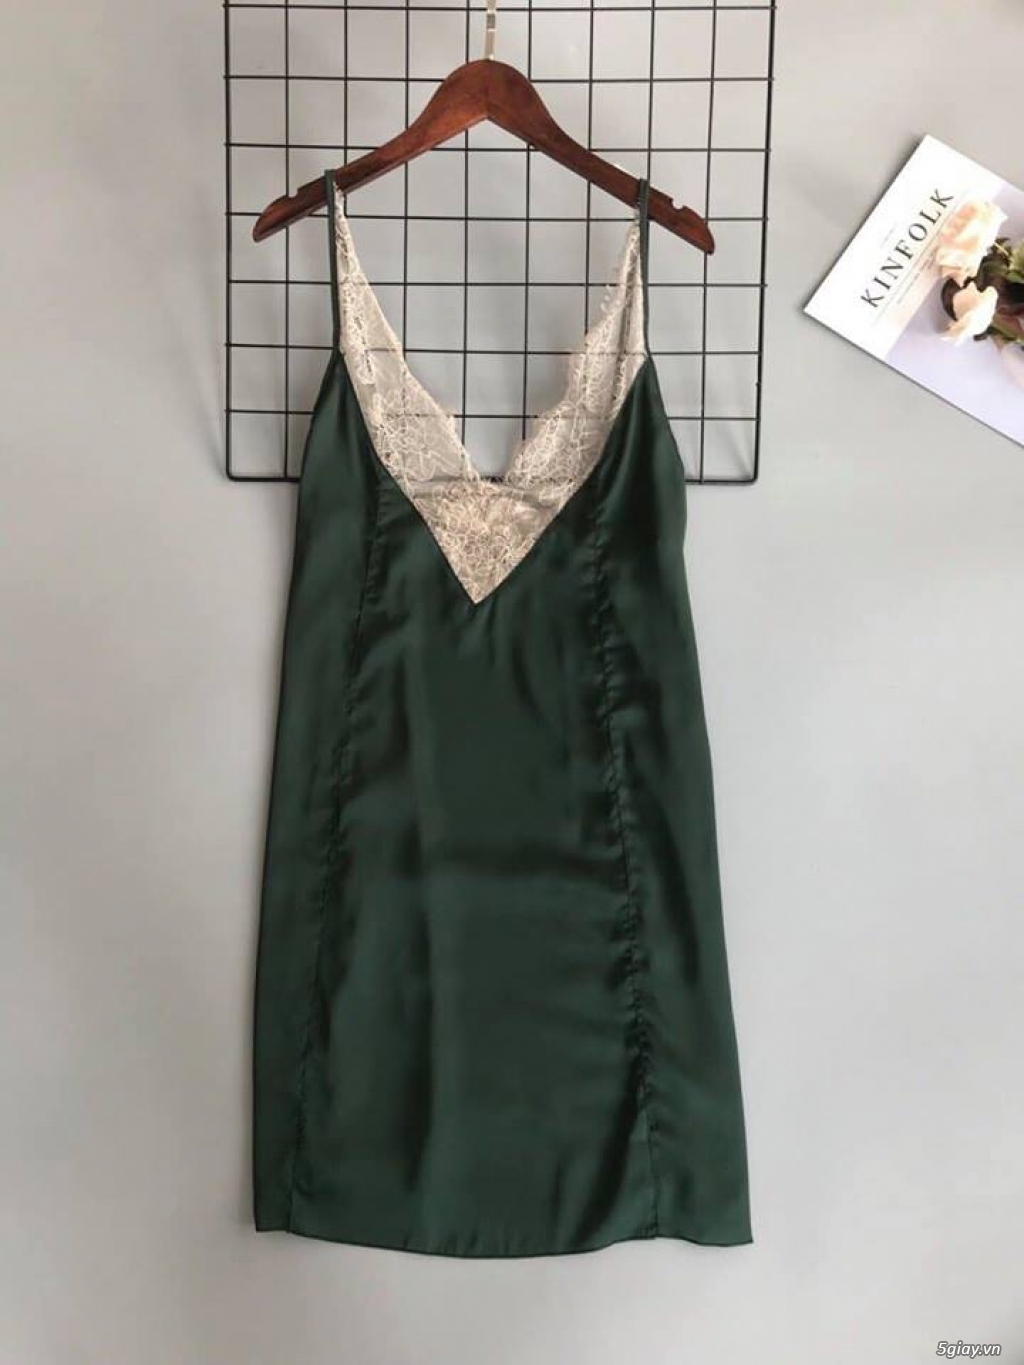 Shop Hiền: Đầm ngủ sẹc xy quyến rủ cho cac nàng ngày valentine 2018 - 20